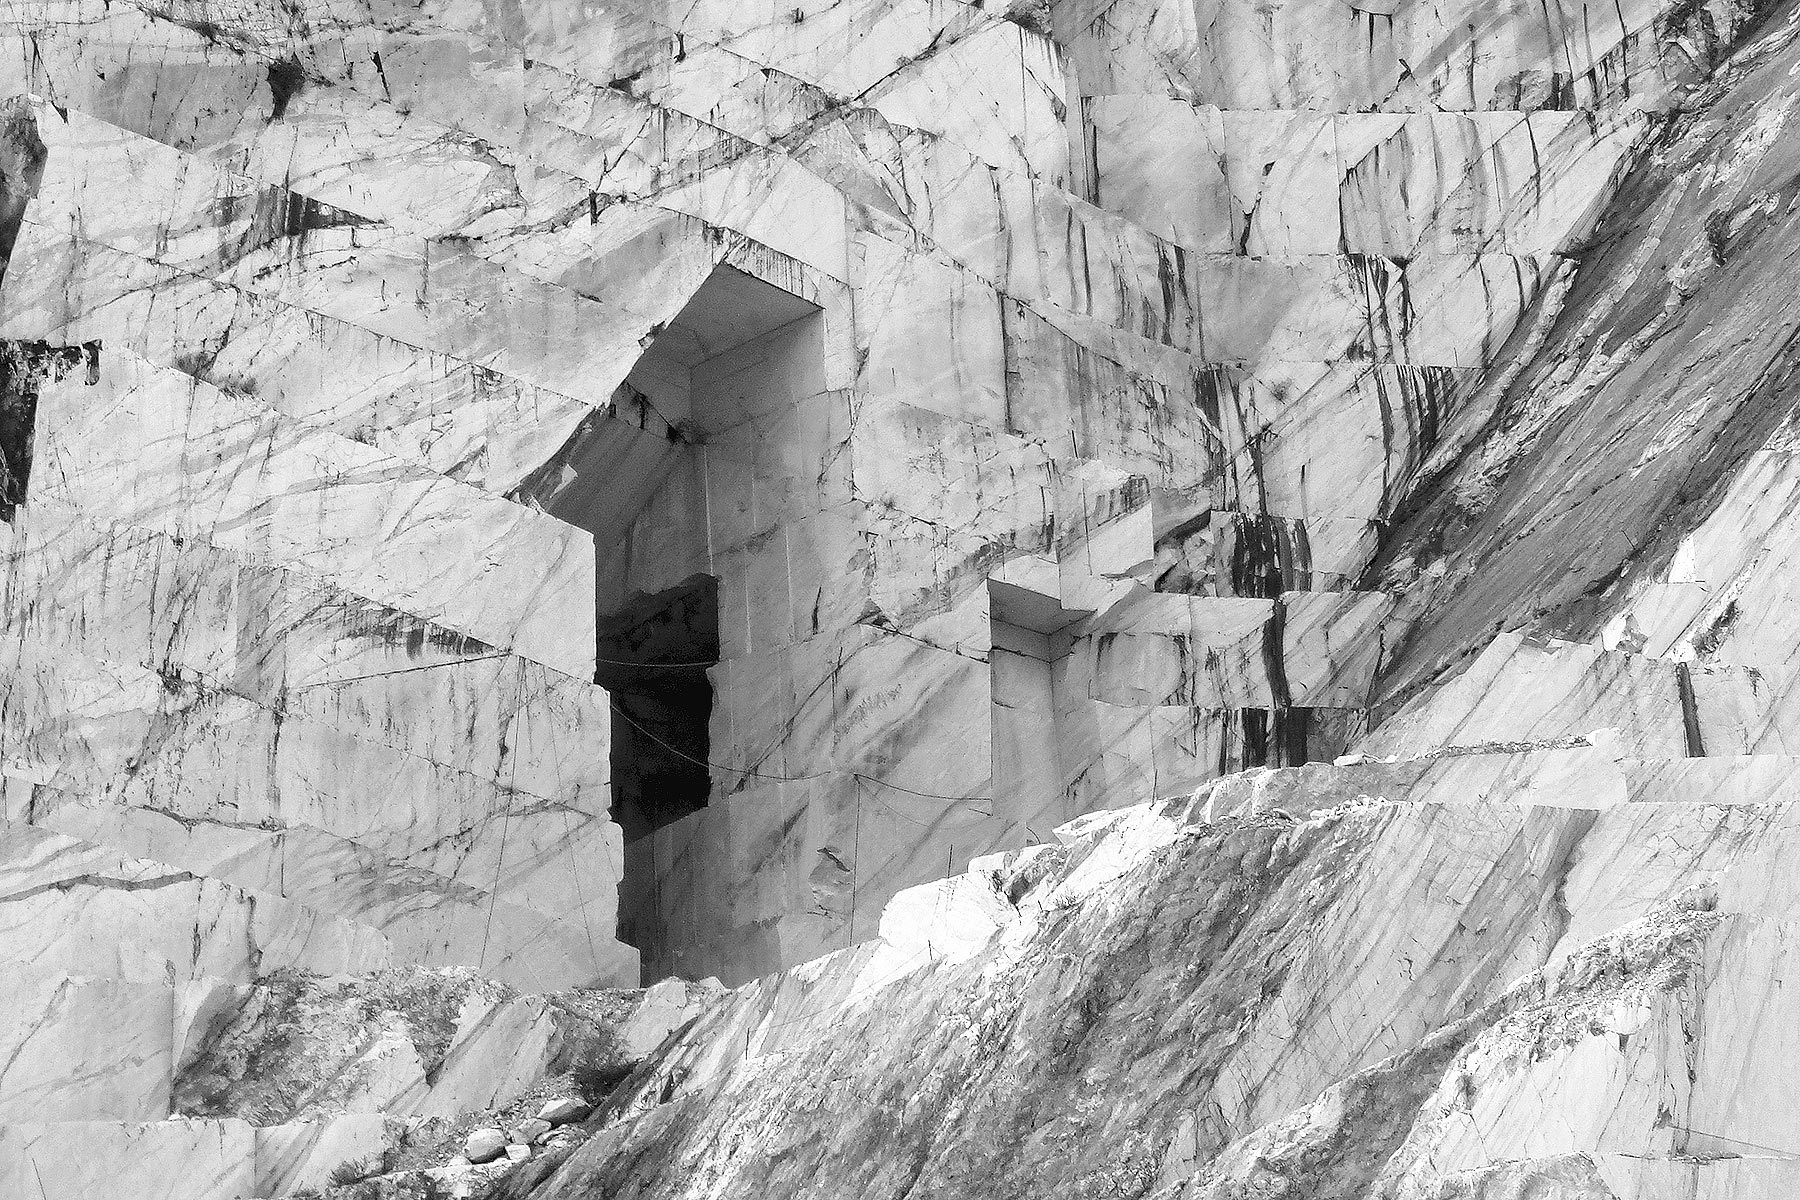 Le cave di marmo di Carrara